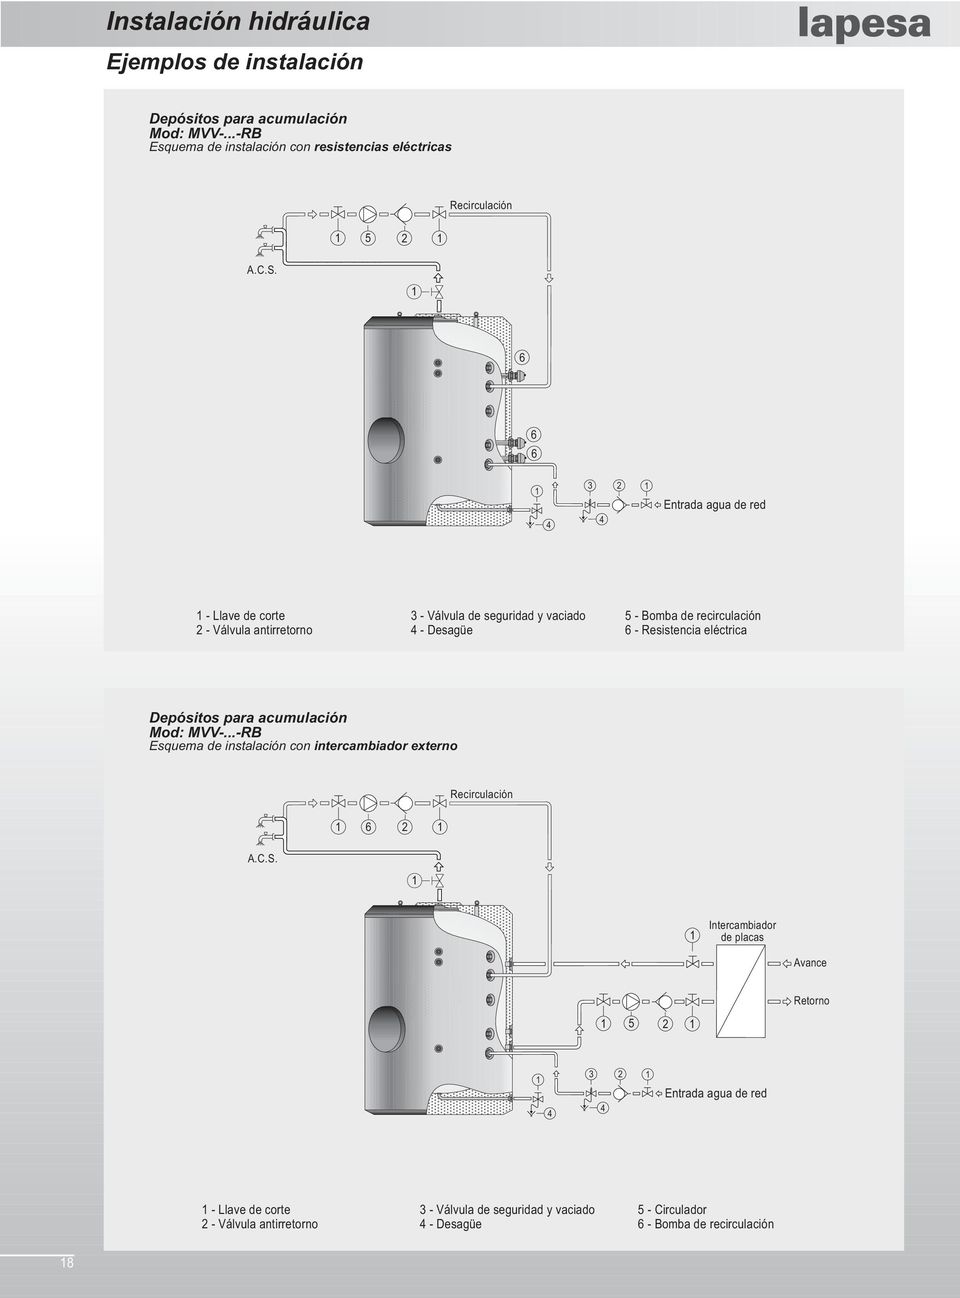 eléctrica Depósitos para acumulación Mod: MVV-...-RB Esquema de instalación con intercambiador externo Recirculación 6 2 A.C.S.